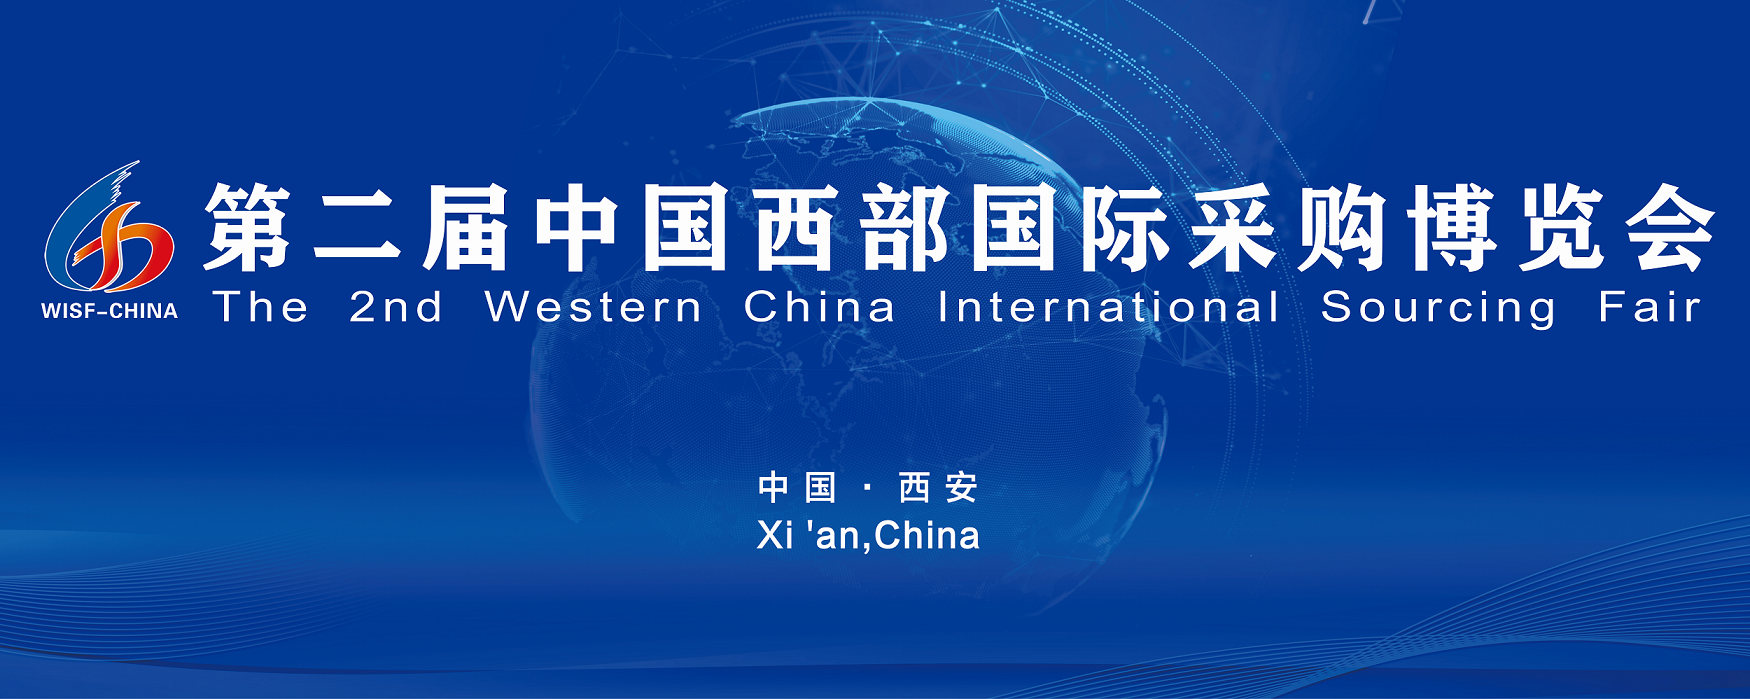 第二届中国西部国际采购展览会